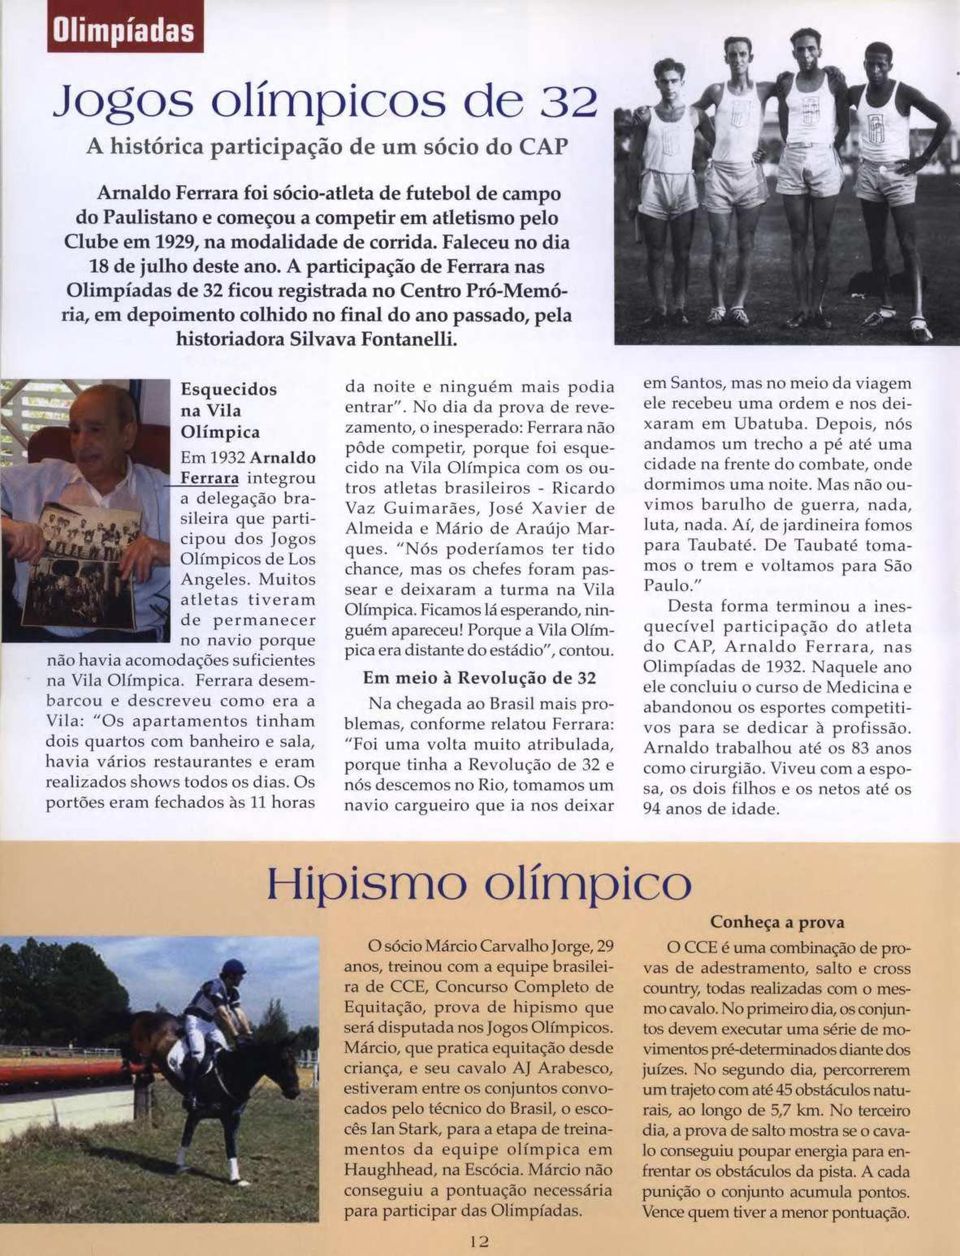 A participação de Ferrara nas Olimpíadas de 32 ficou registrada no Centro Pró-Memória, em depoimento colhido no final do ano passado, pela historiadora Silvava Fontanelli.